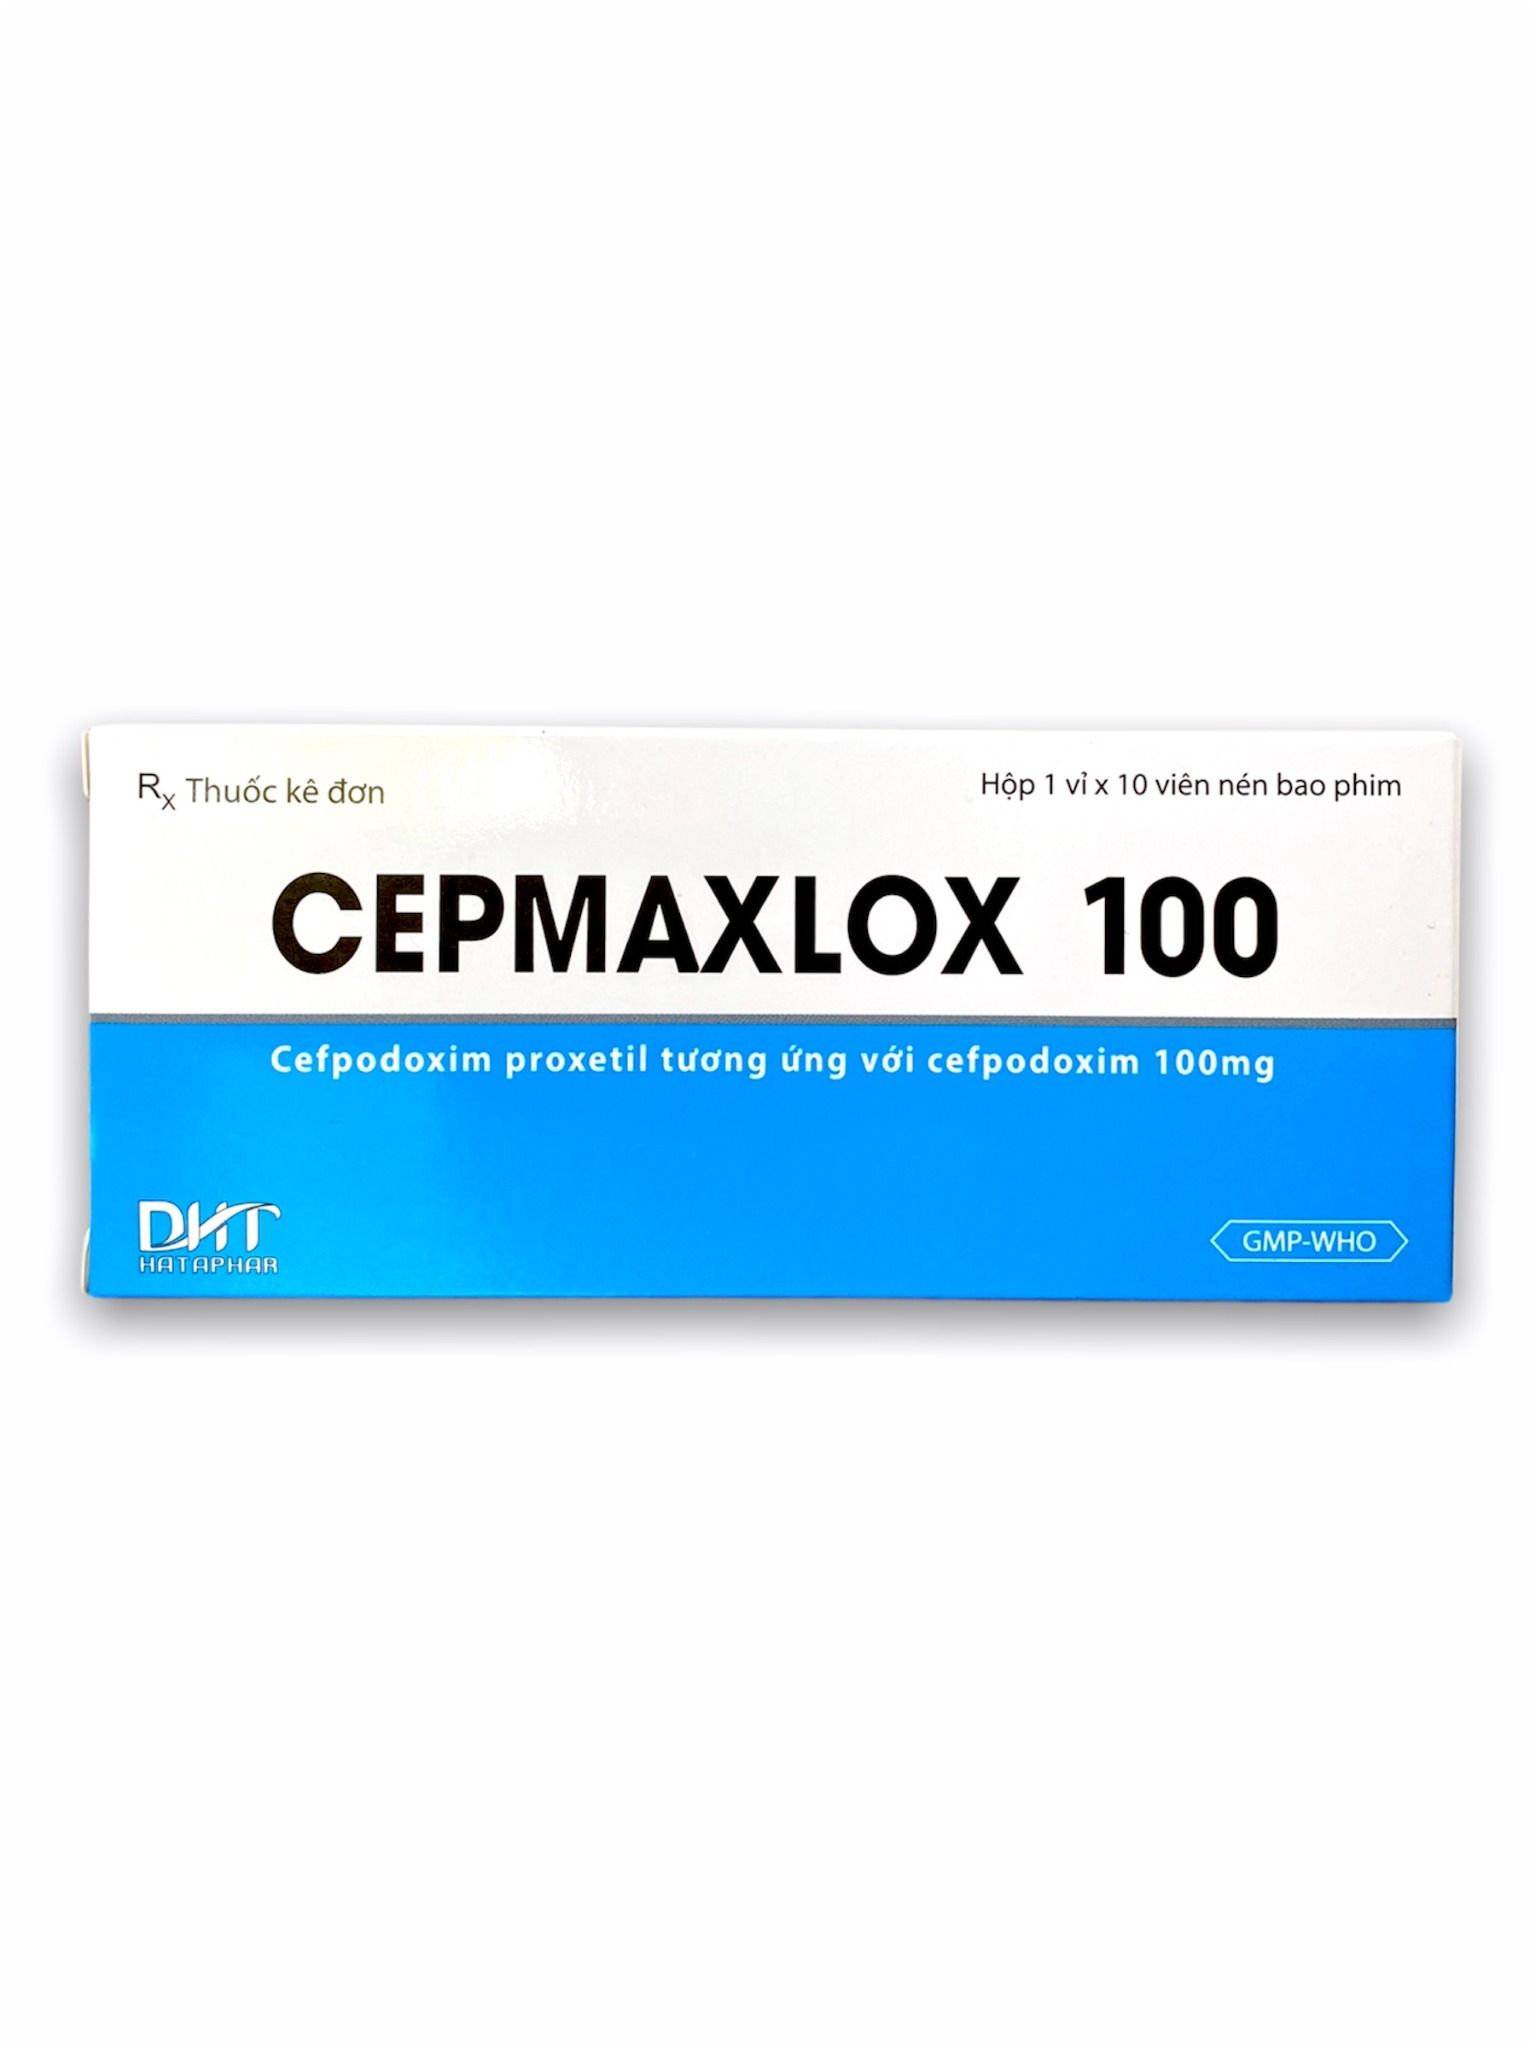 CEPMAXLOX 100 (Cefpodoxim 100mg)